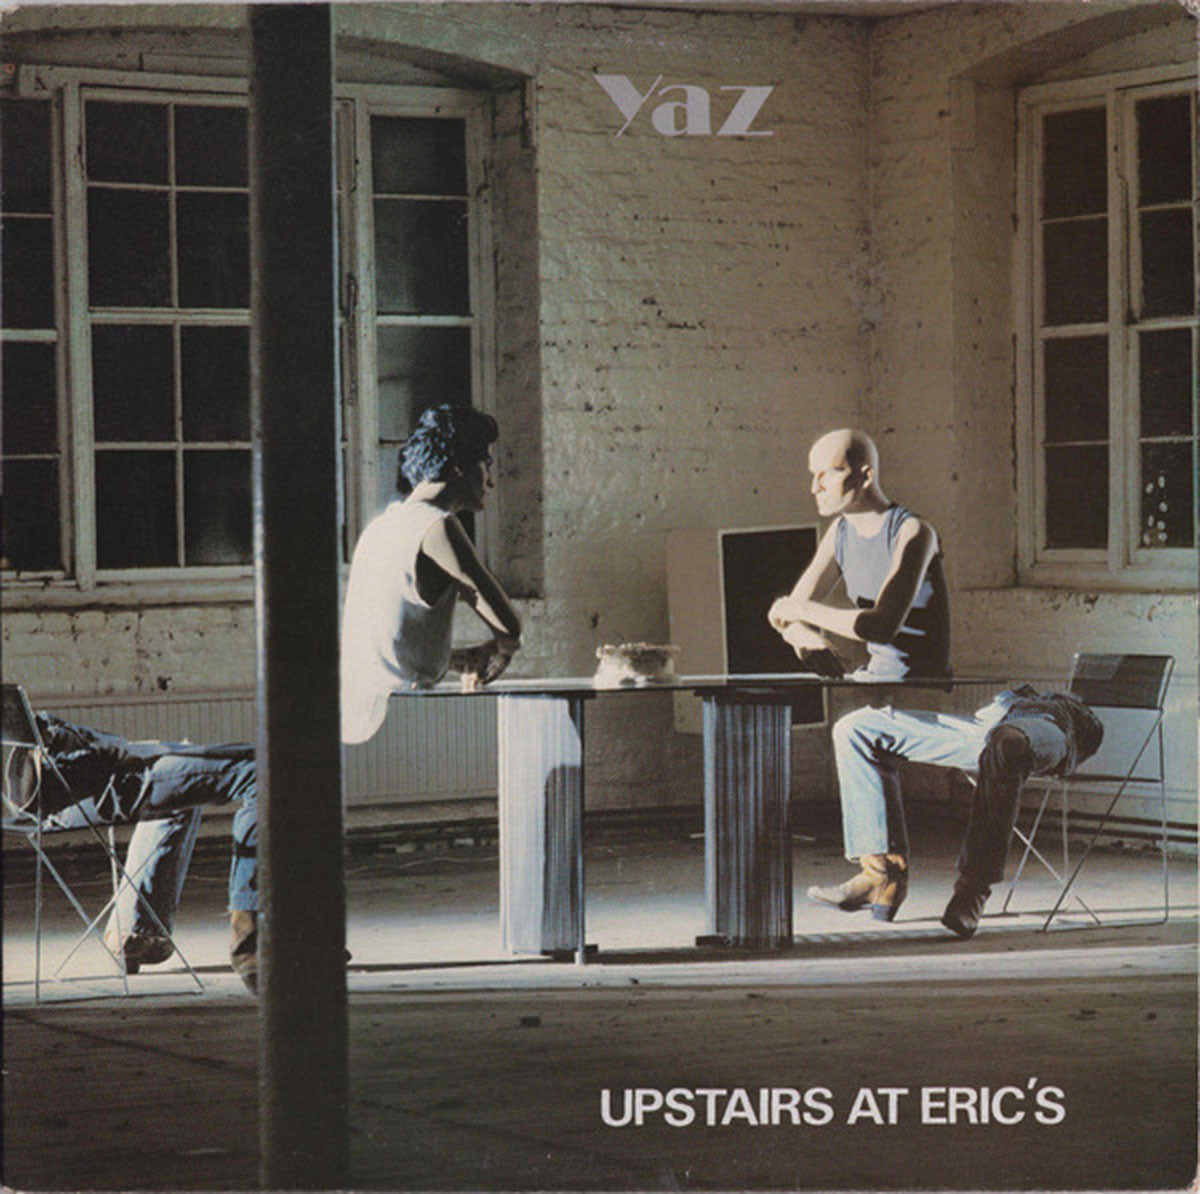 Yaz – Upstairs At Eric's